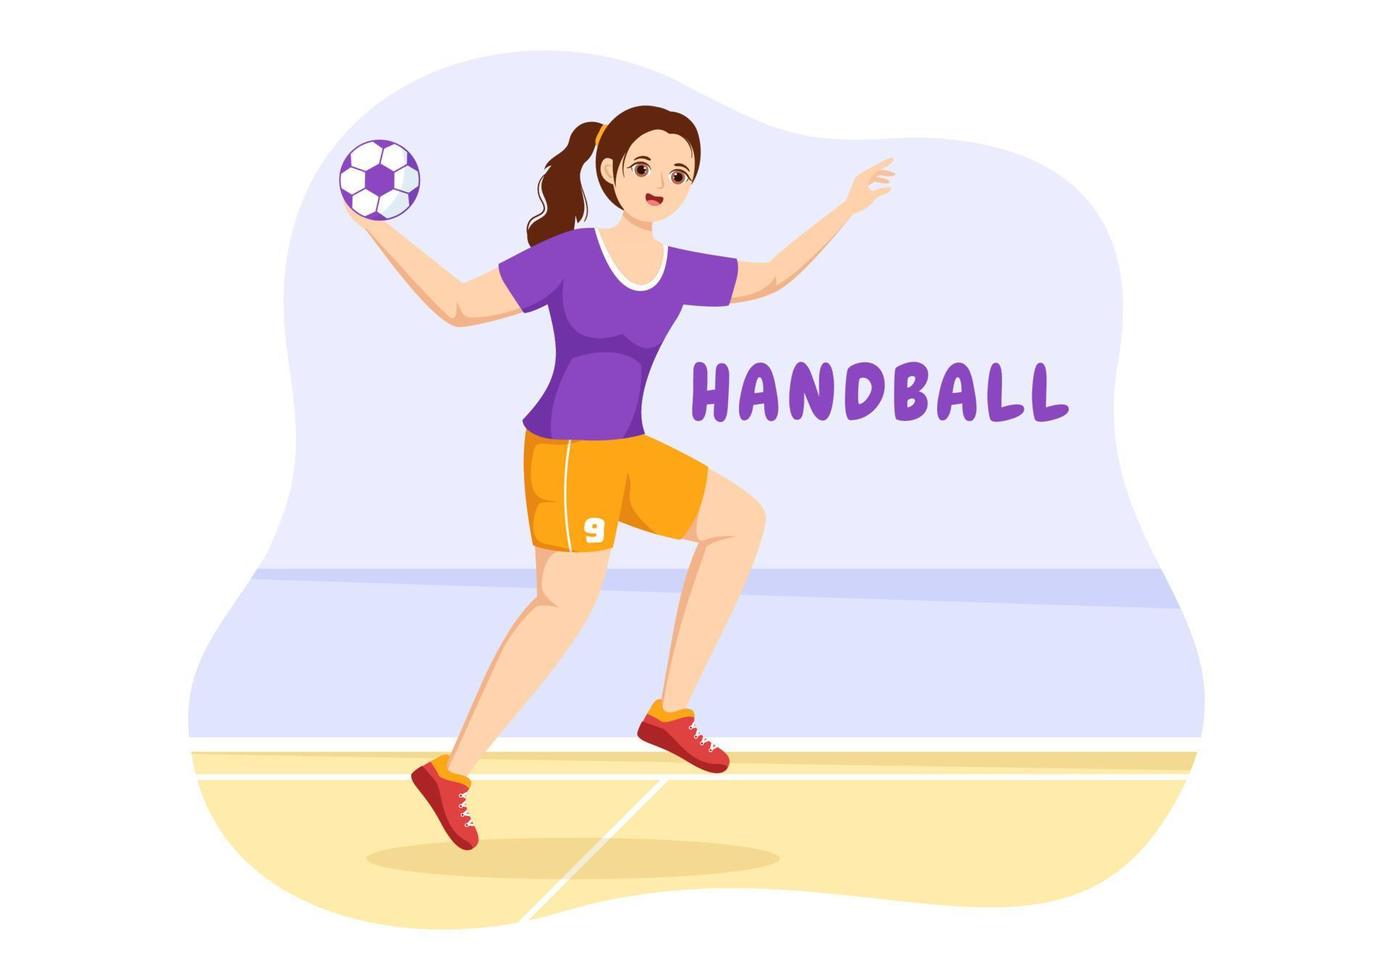 ilustração de handebol de um jogador tocando a bola com a mão e marcando um gol em um modelo de desenho de mão plana de desenho animado de competição esportiva vetor